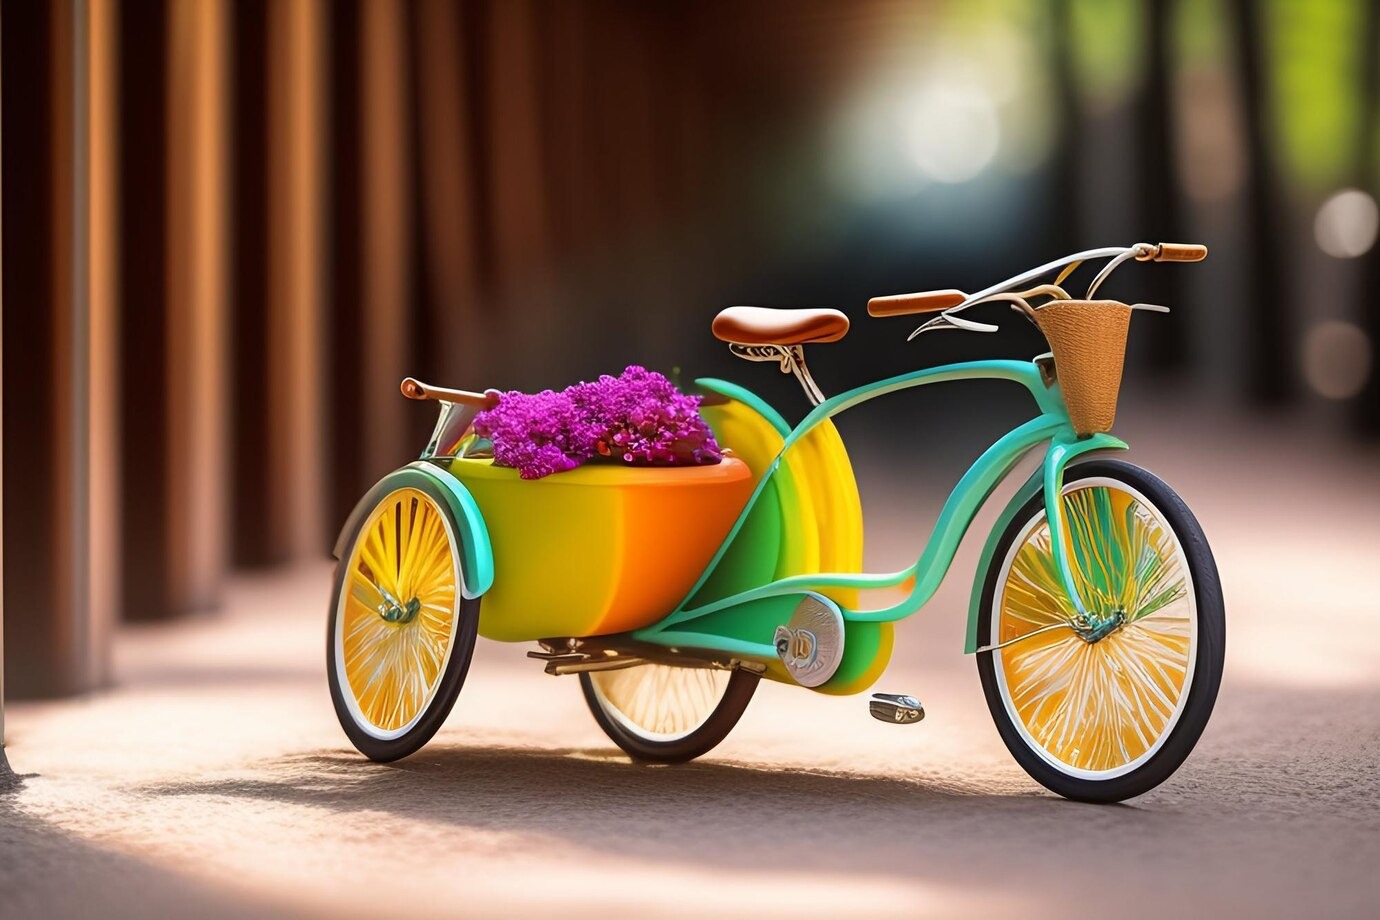 Cykelkram: En Model for Moderne Cykelforretning med Personlig Touch og Innovativ Tilgang